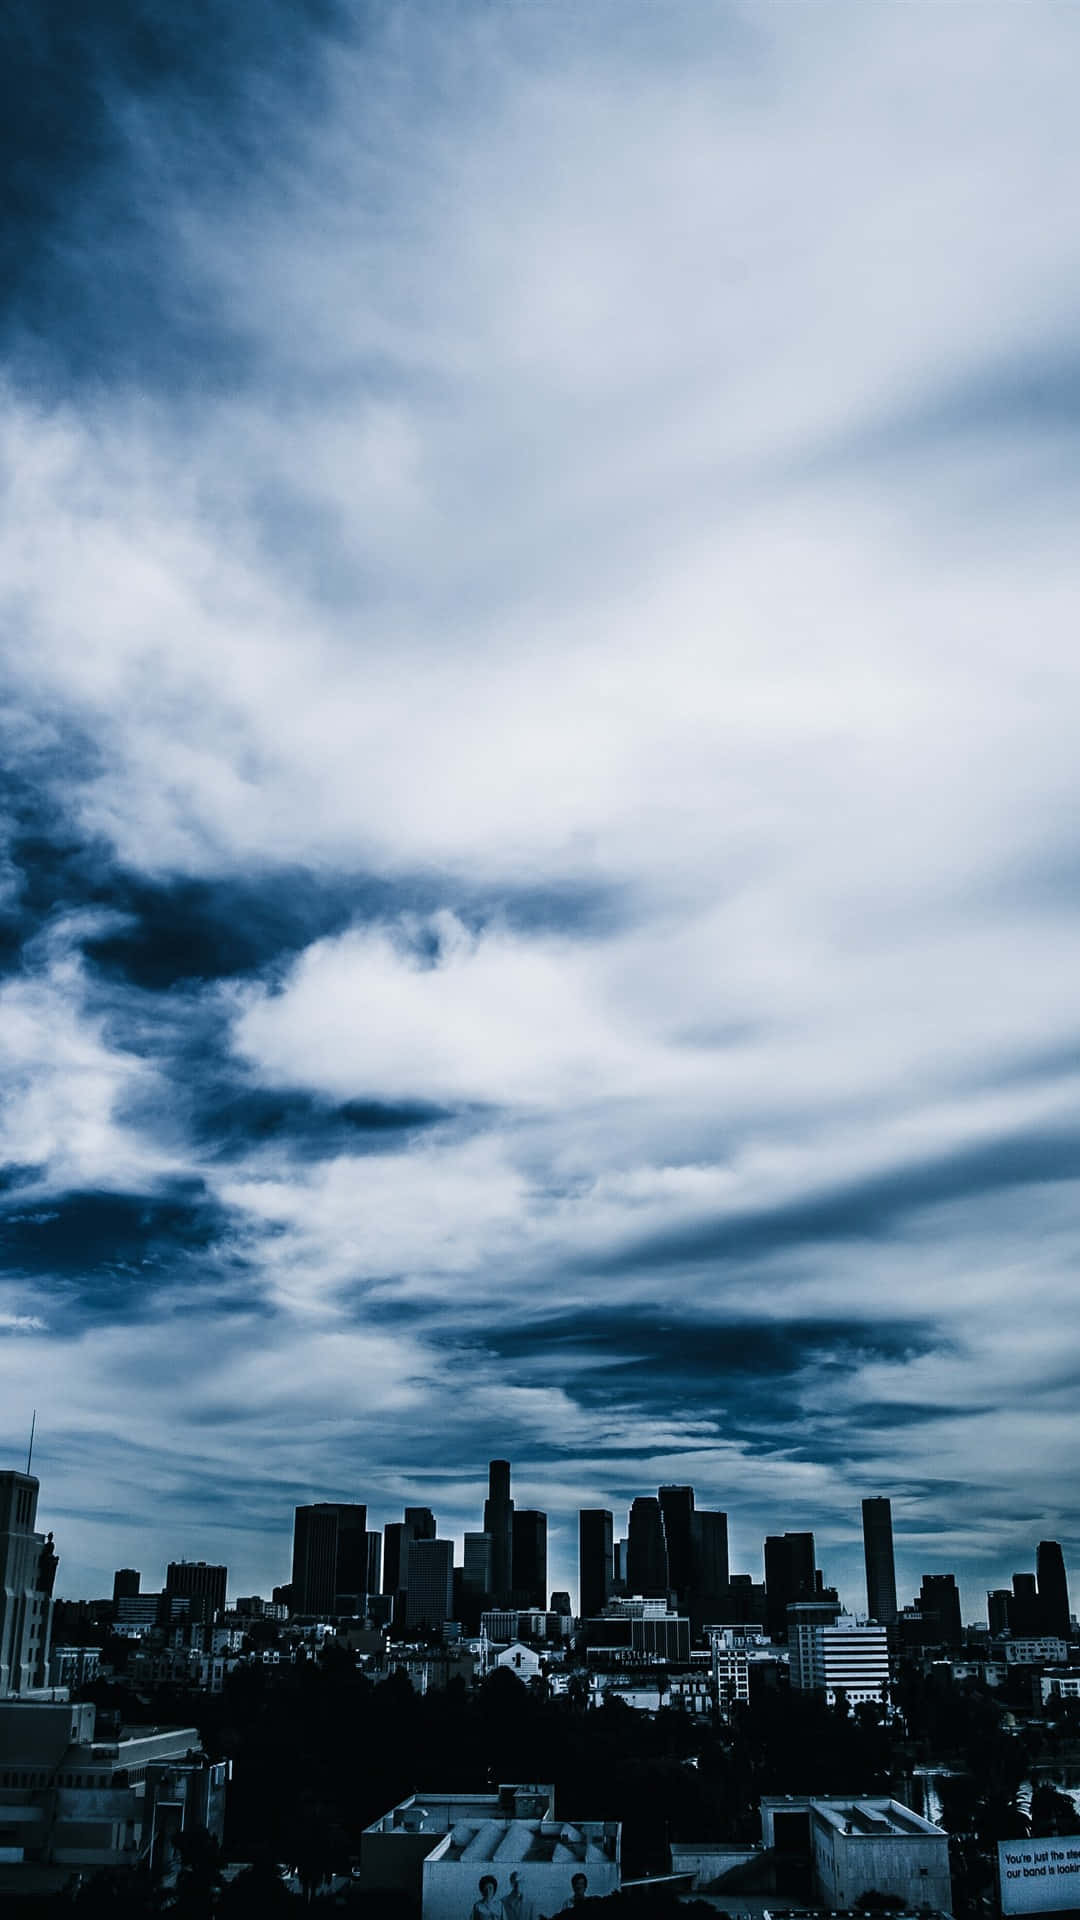 Tag et skridt tilbage og nyd naturens skønhed med denne æstetiske skyer tumblr-billede. Wallpaper